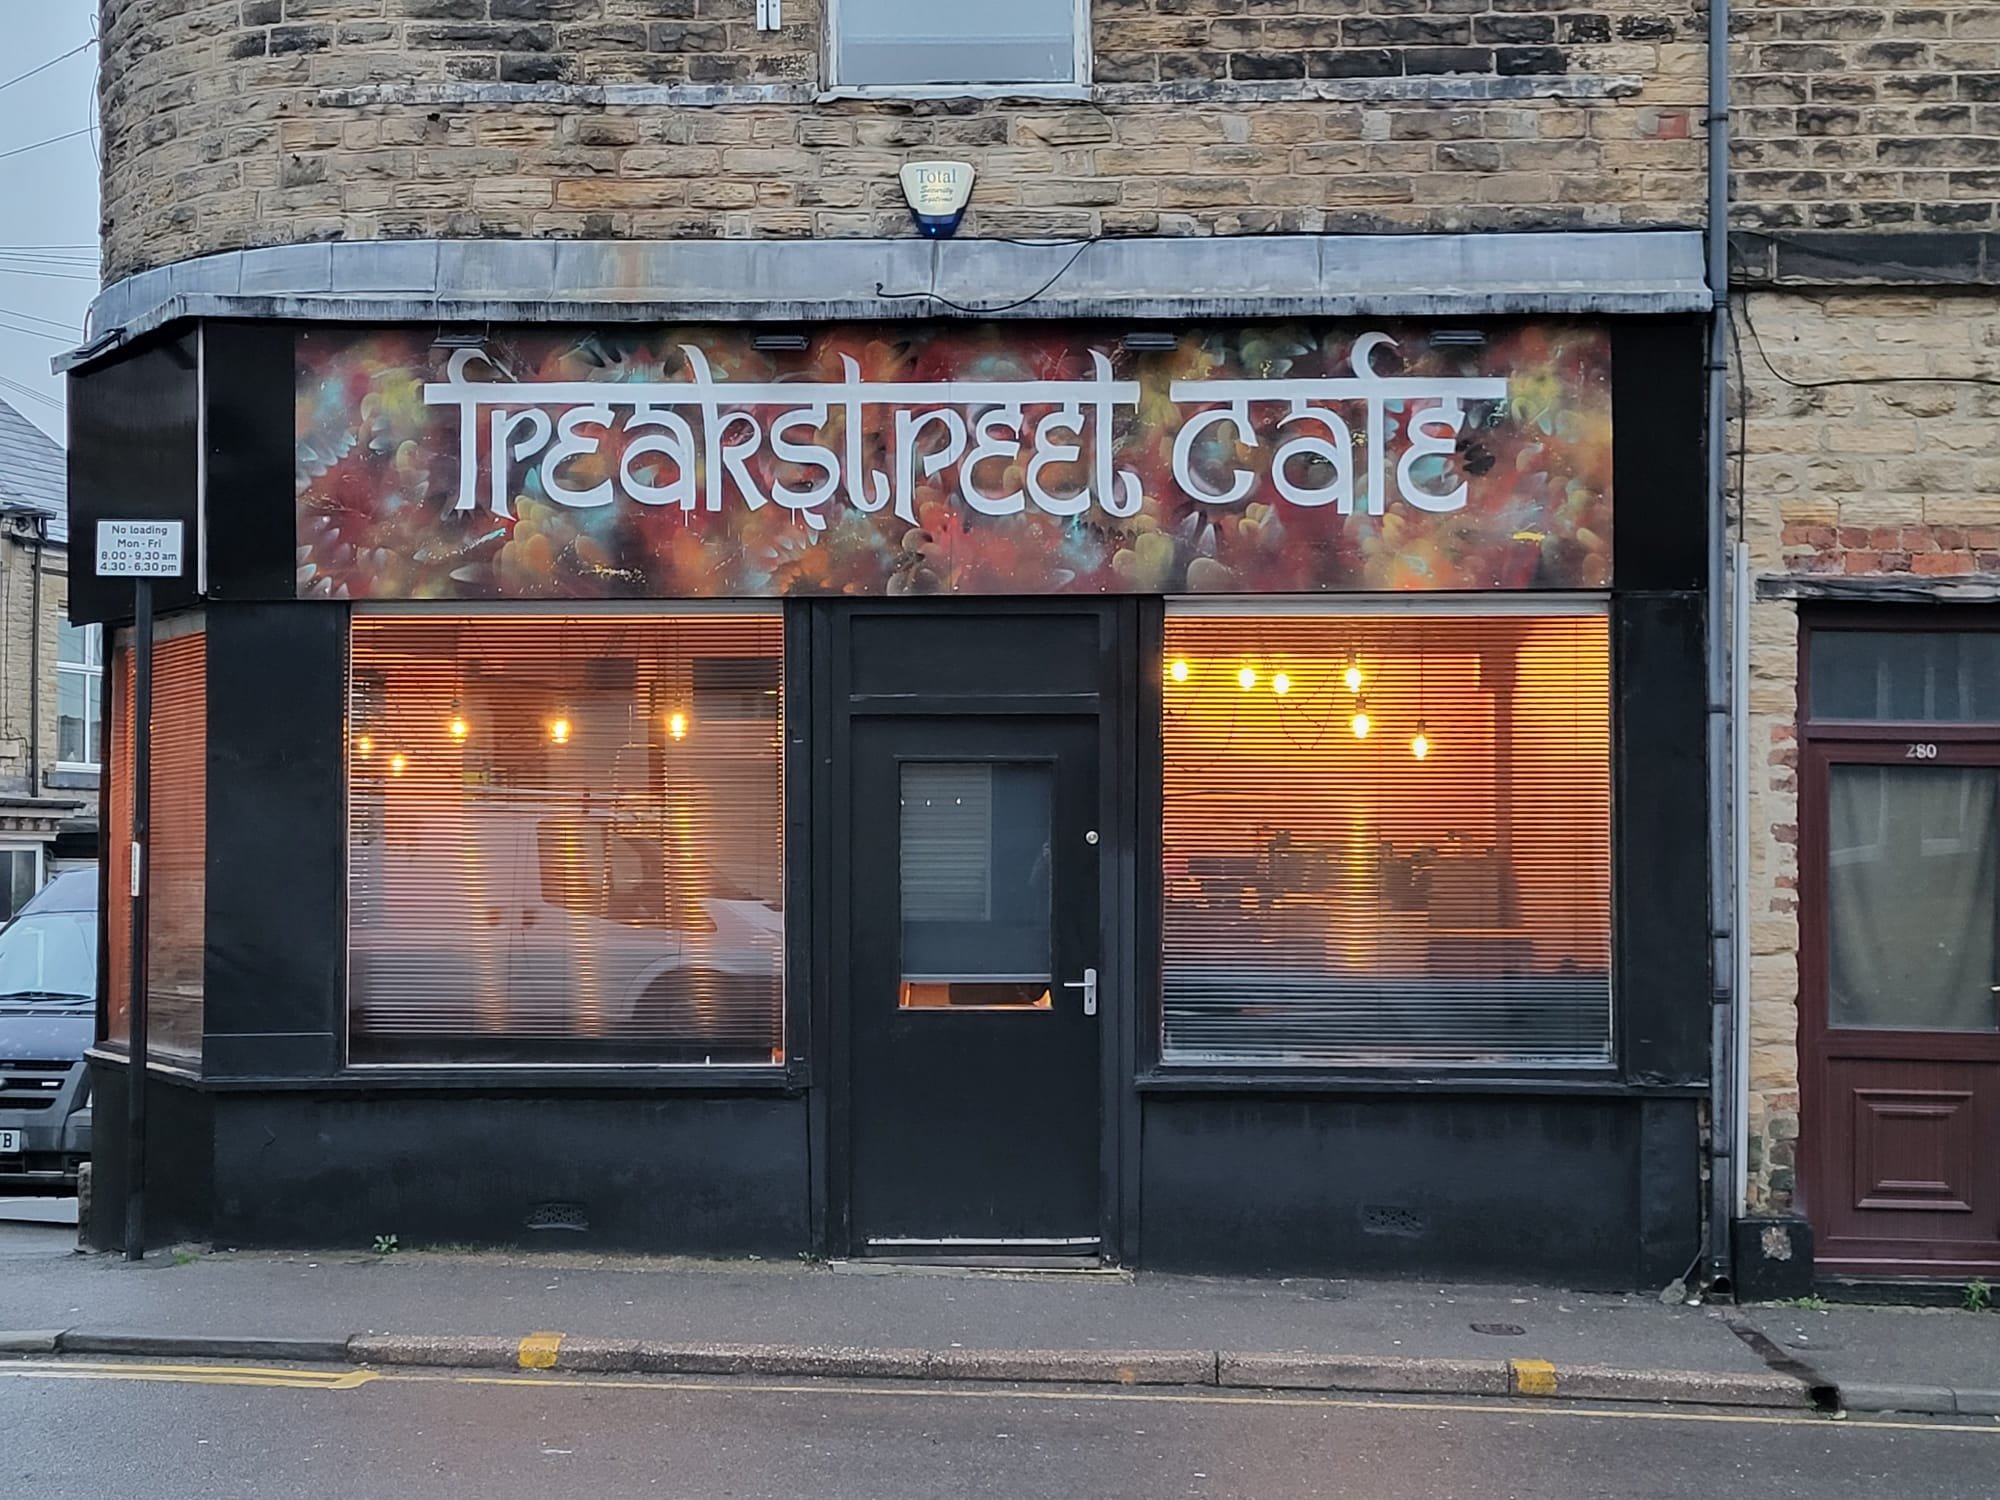 FREAKSTREET CAFE